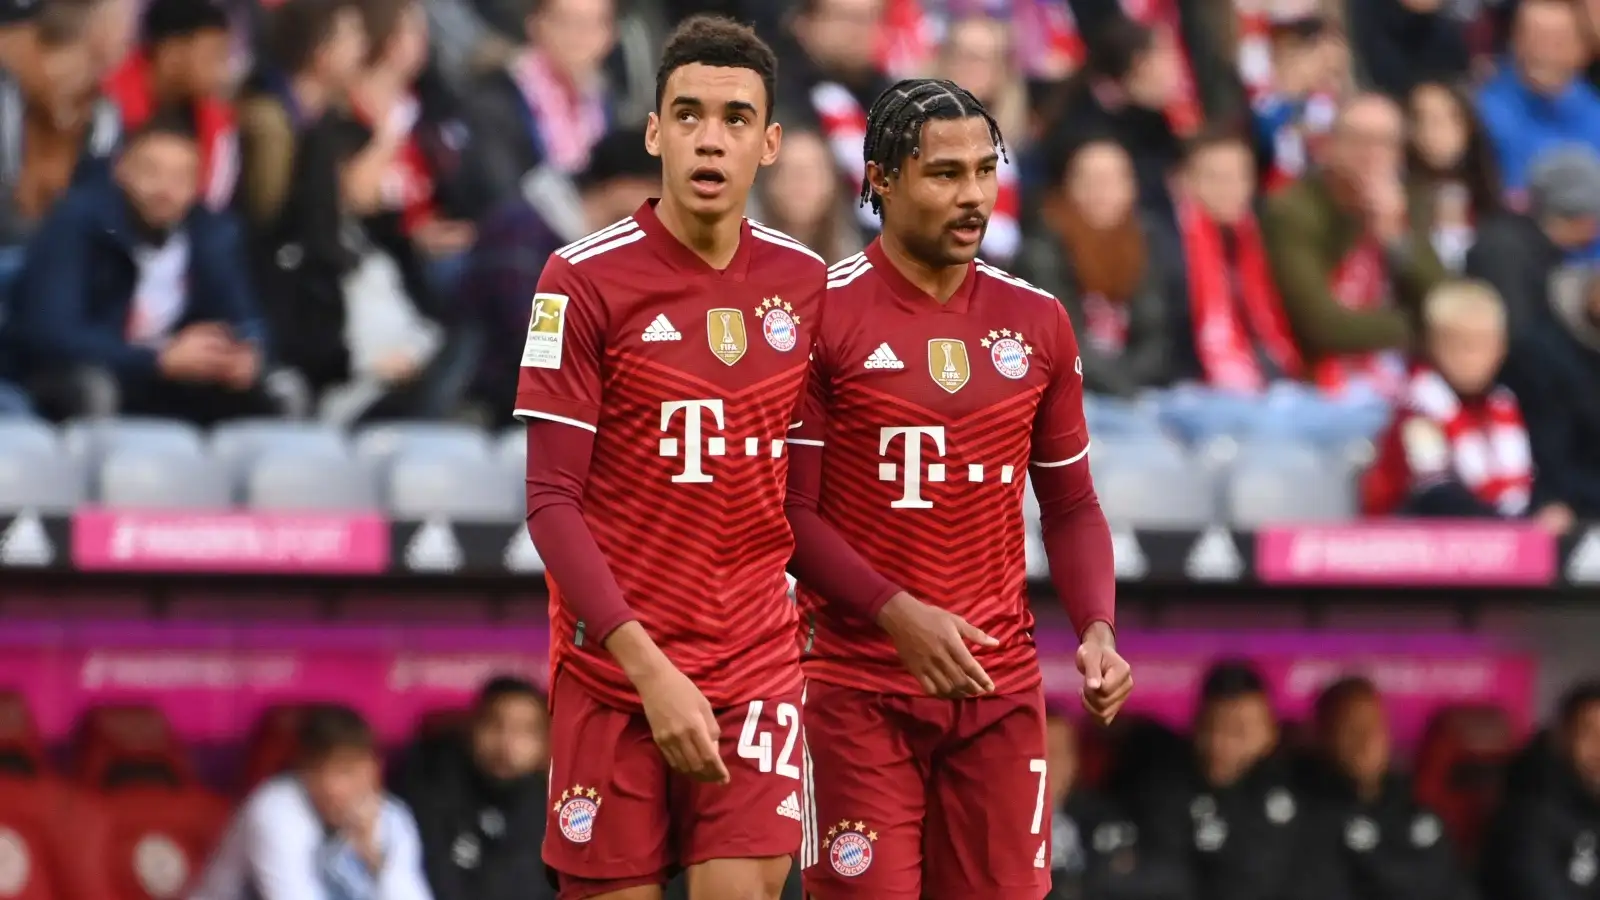 Bayern Munich duo Jamal Musiala and Serge Gnabry during a match